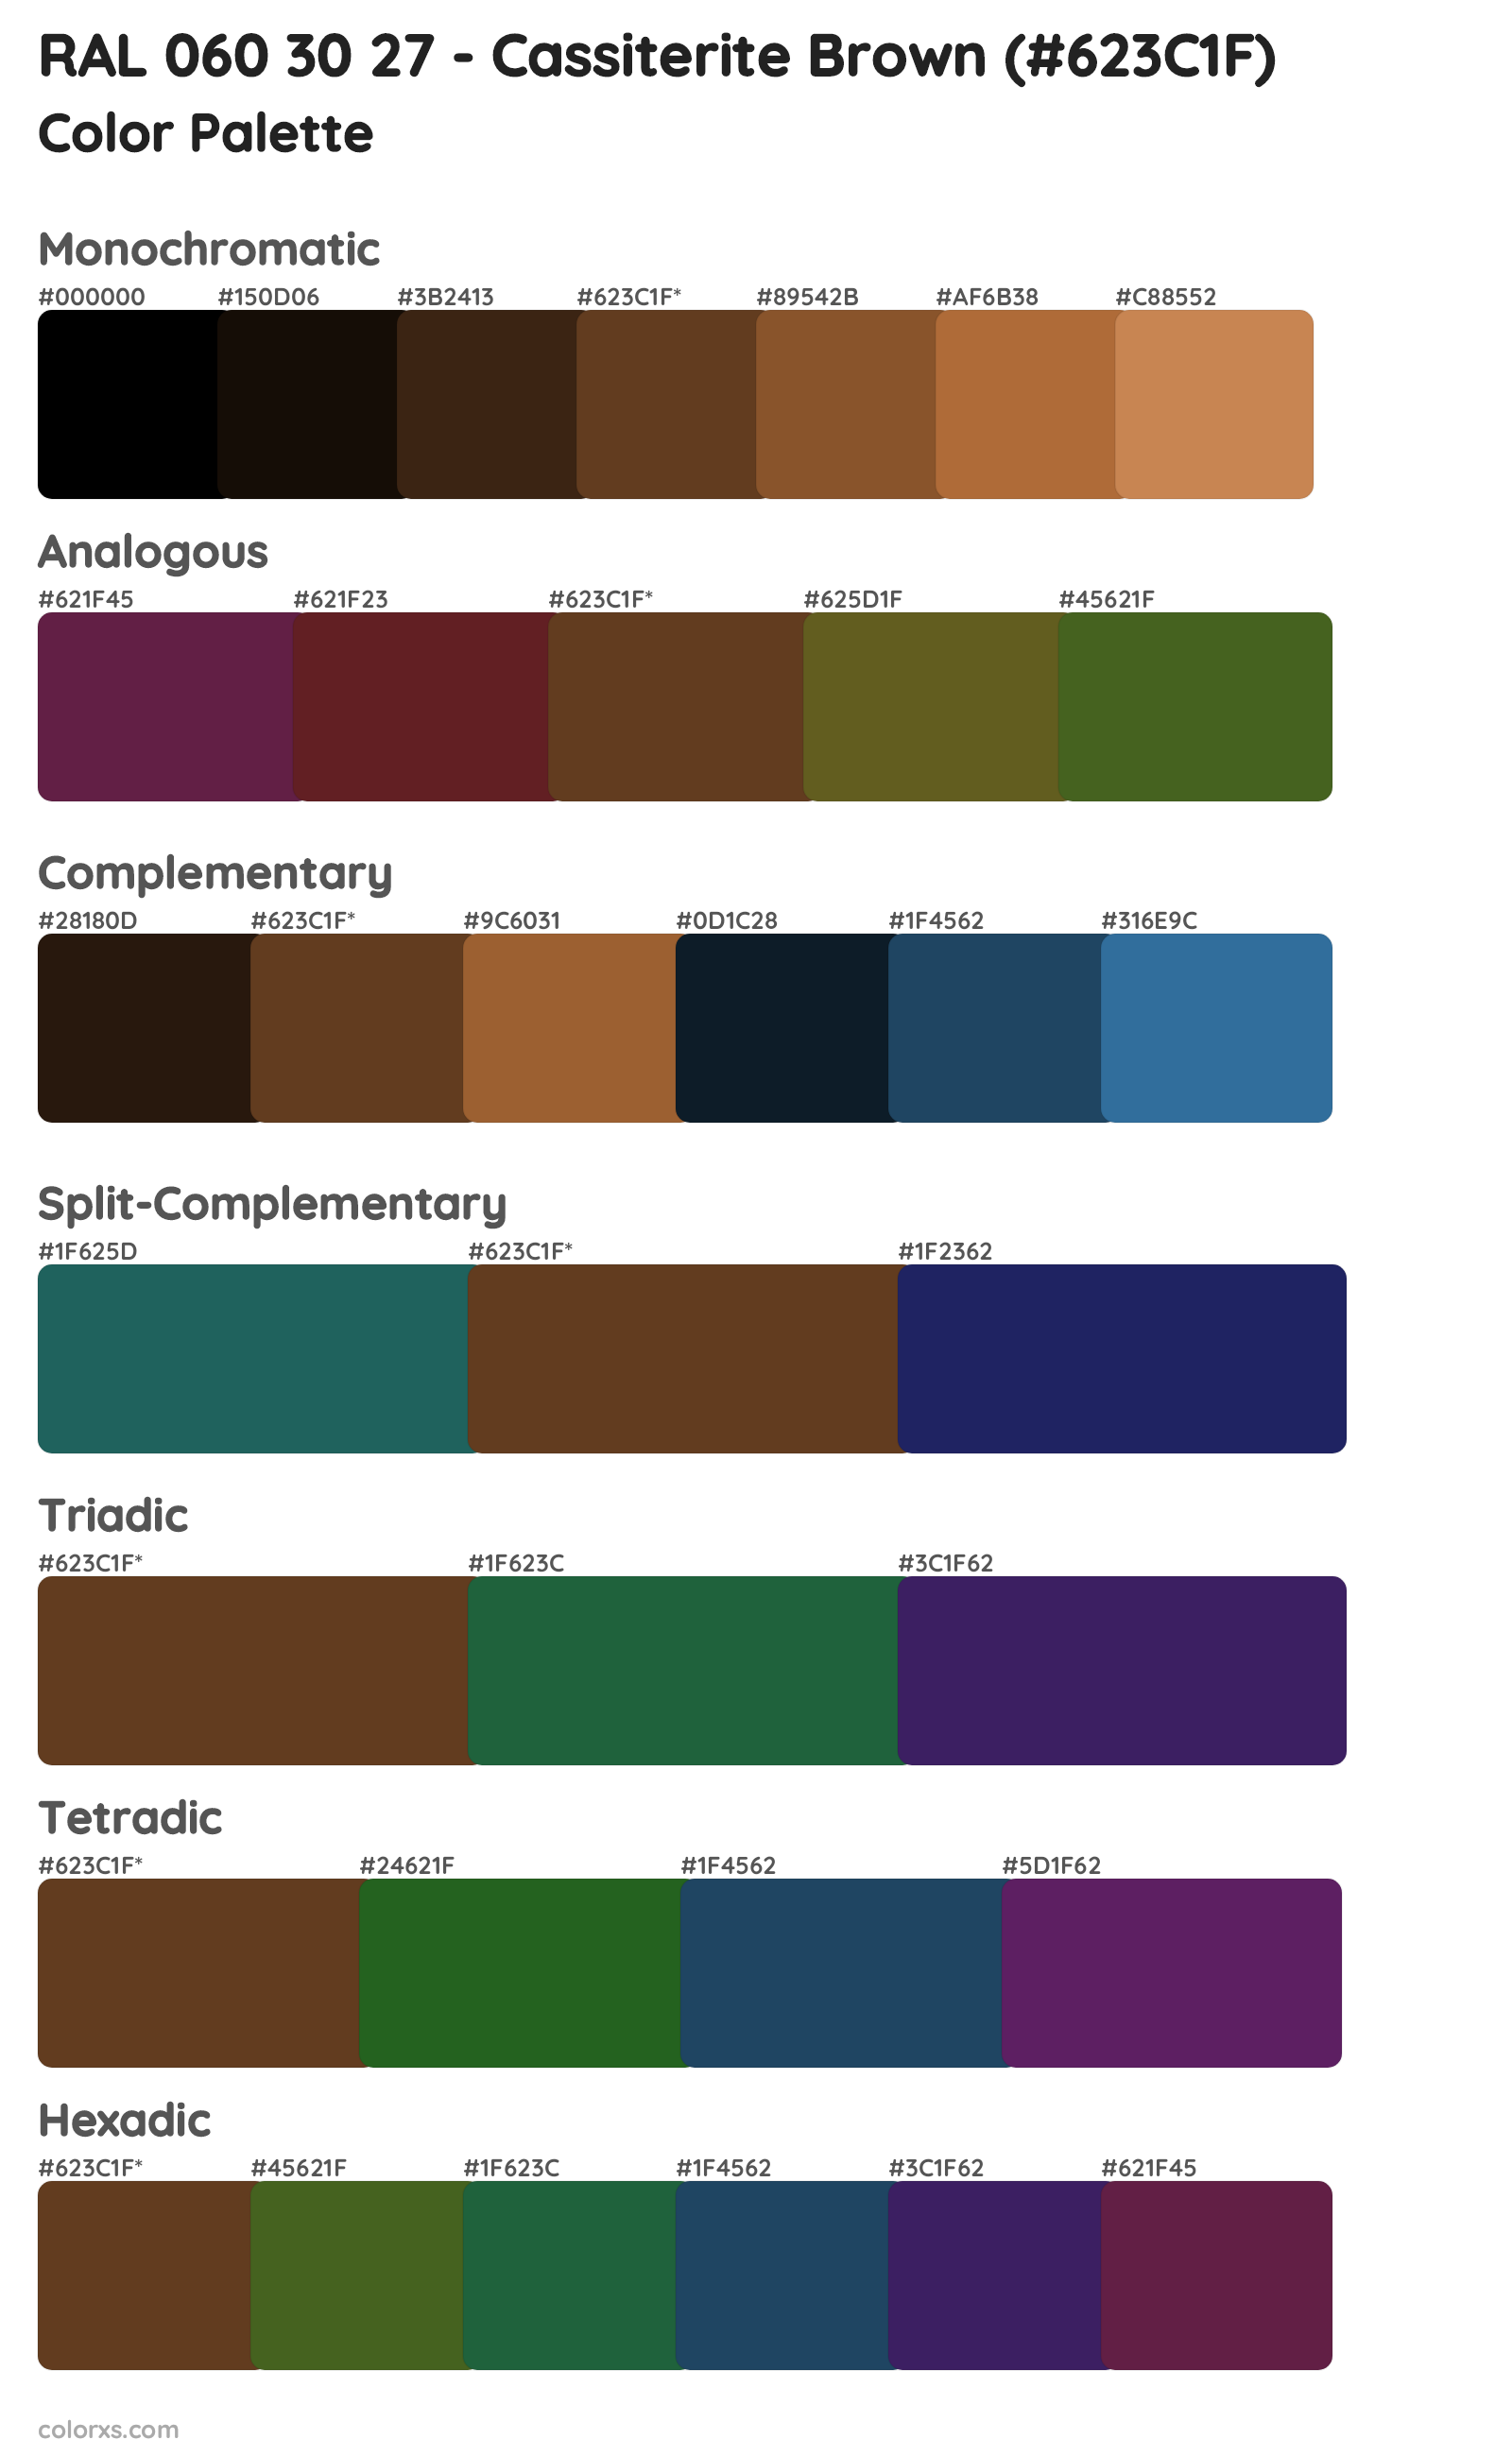 RAL 060 30 27 - Cassiterite Brown Color Scheme Palettes